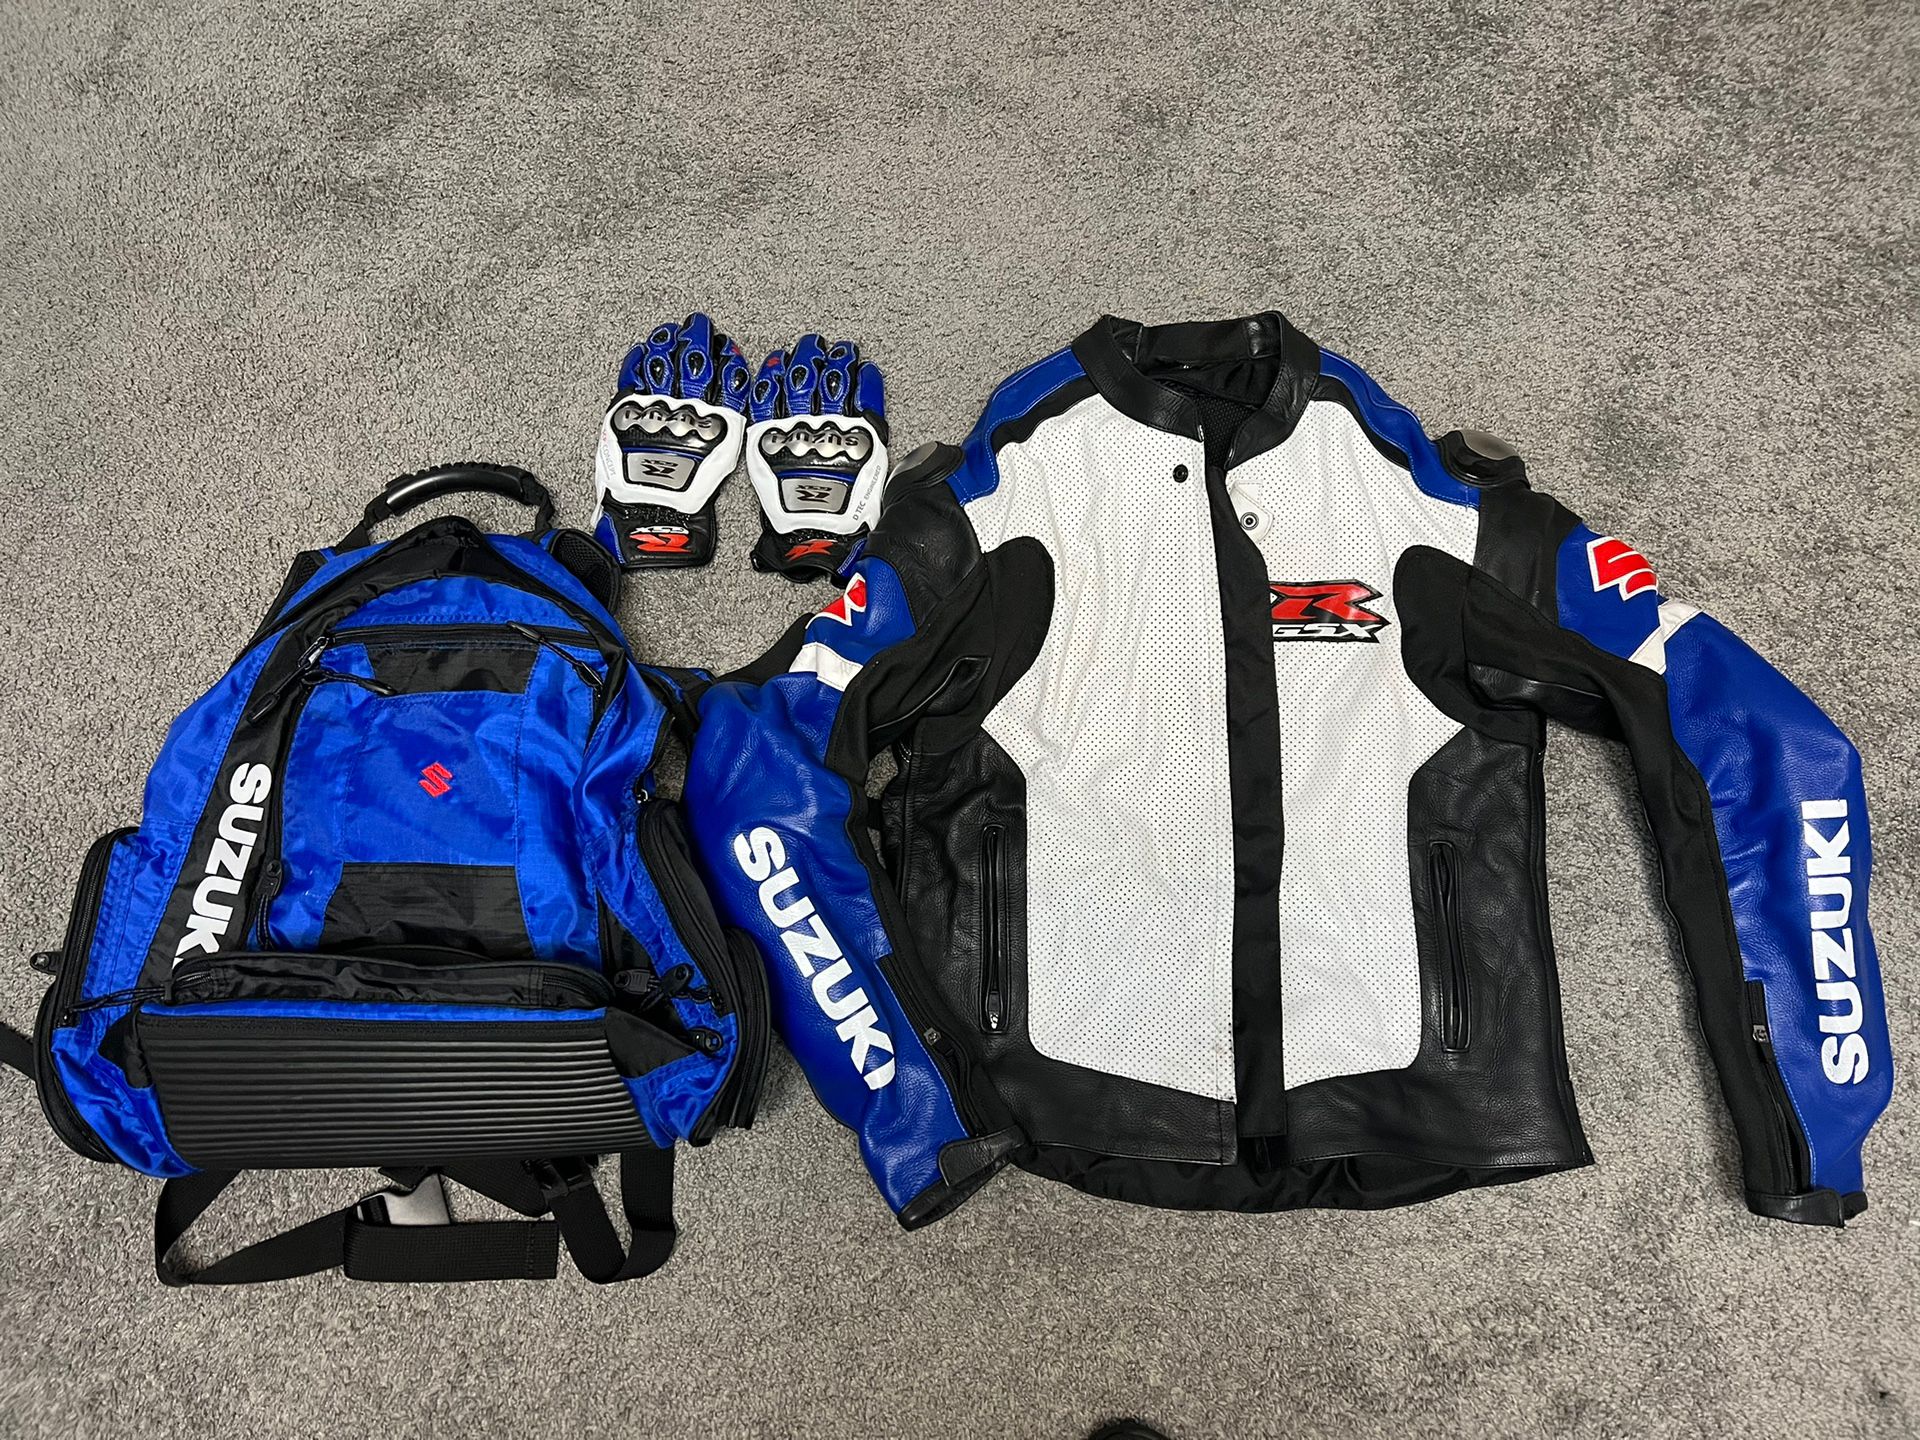 Suzuki Jacket (XL) Book Bag And Riding Gloves 